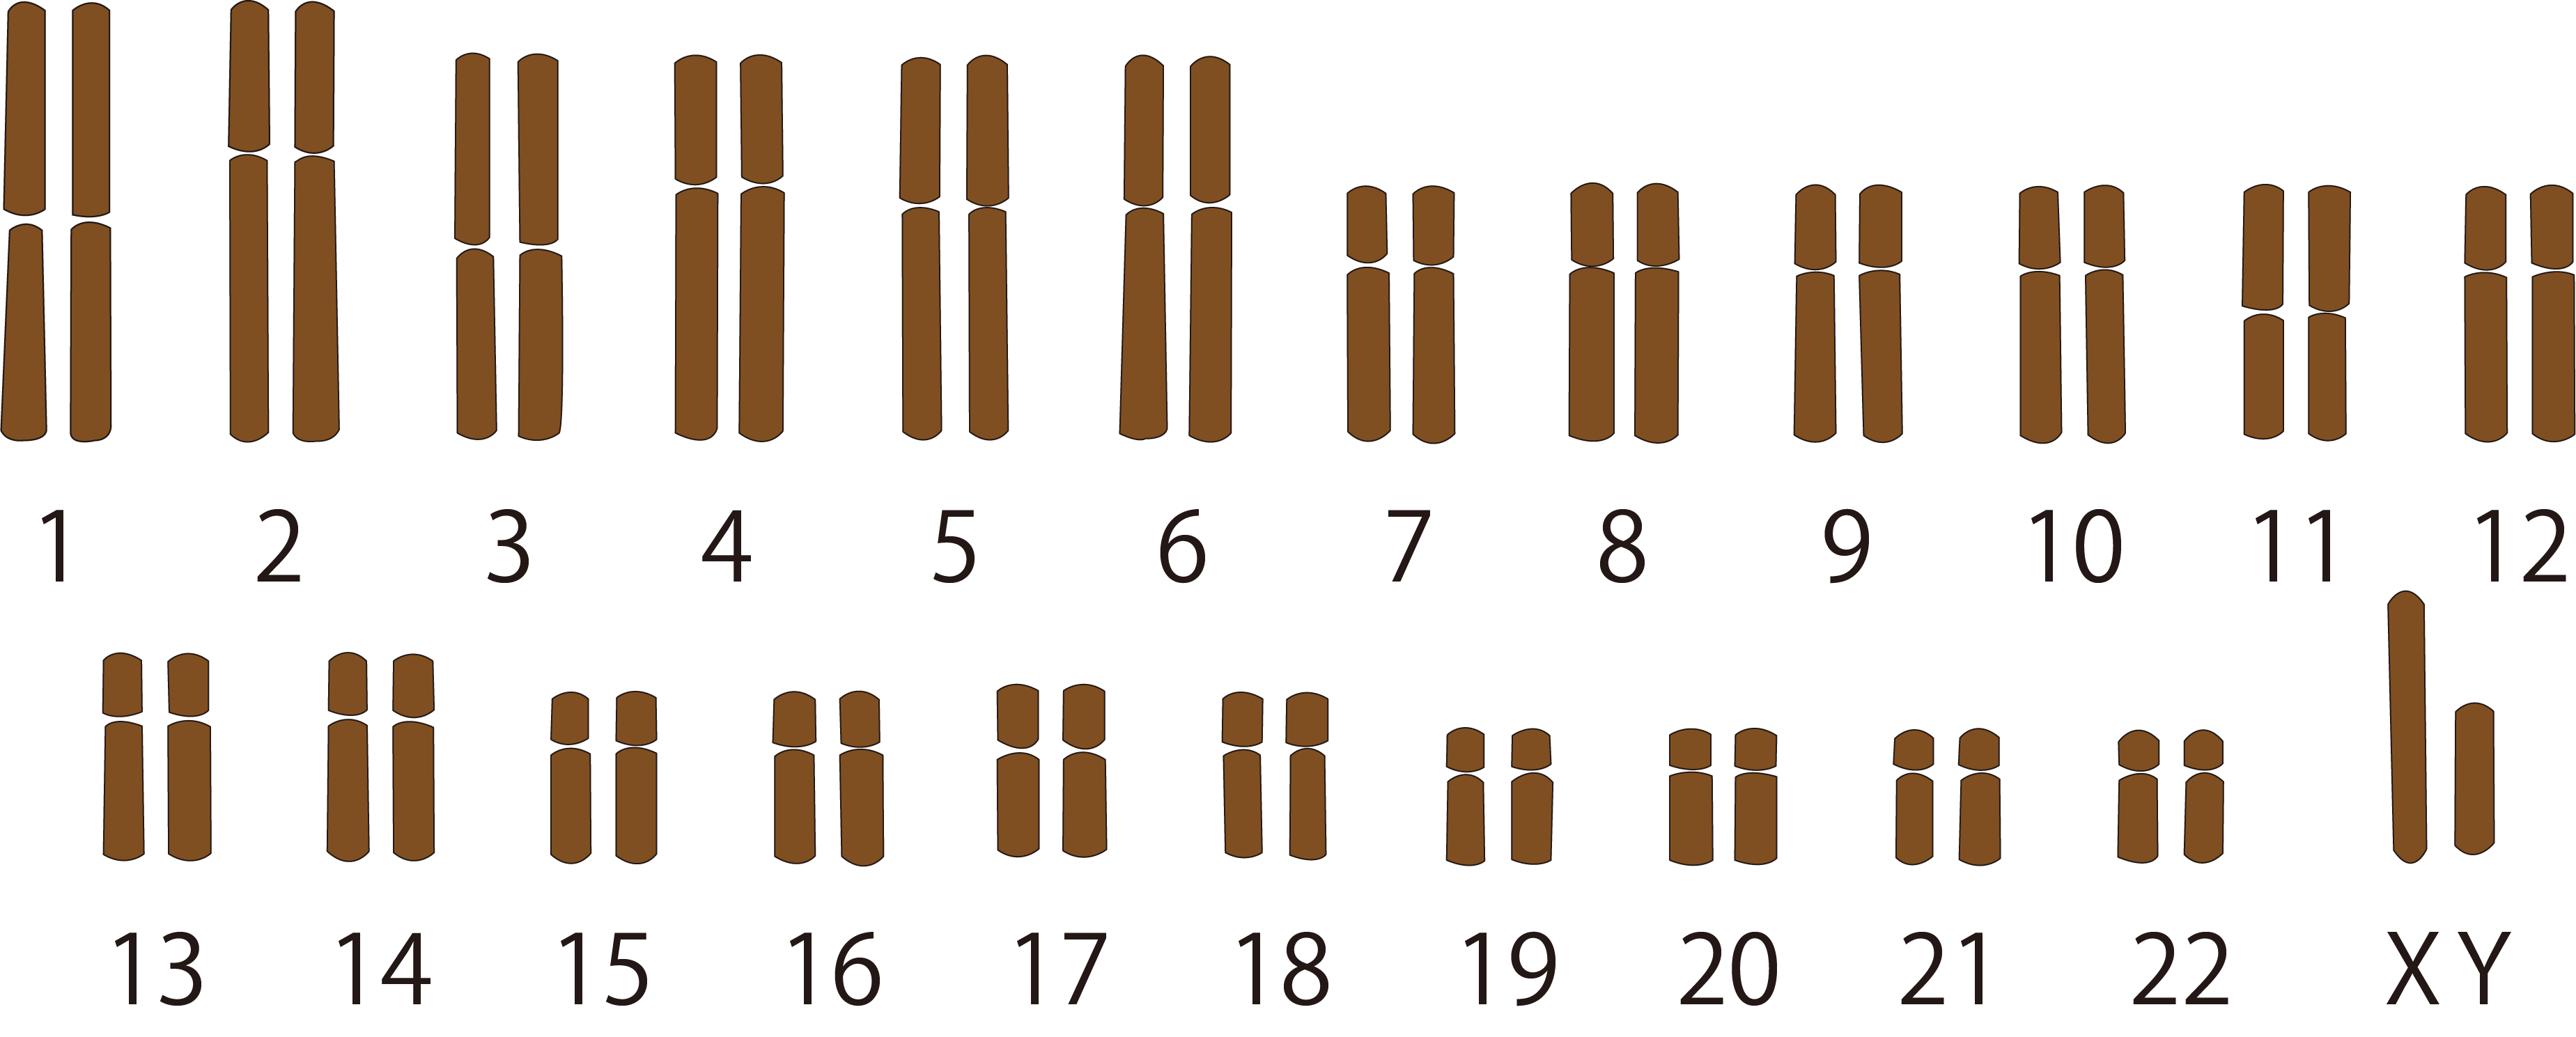 ヒトの染色体の数